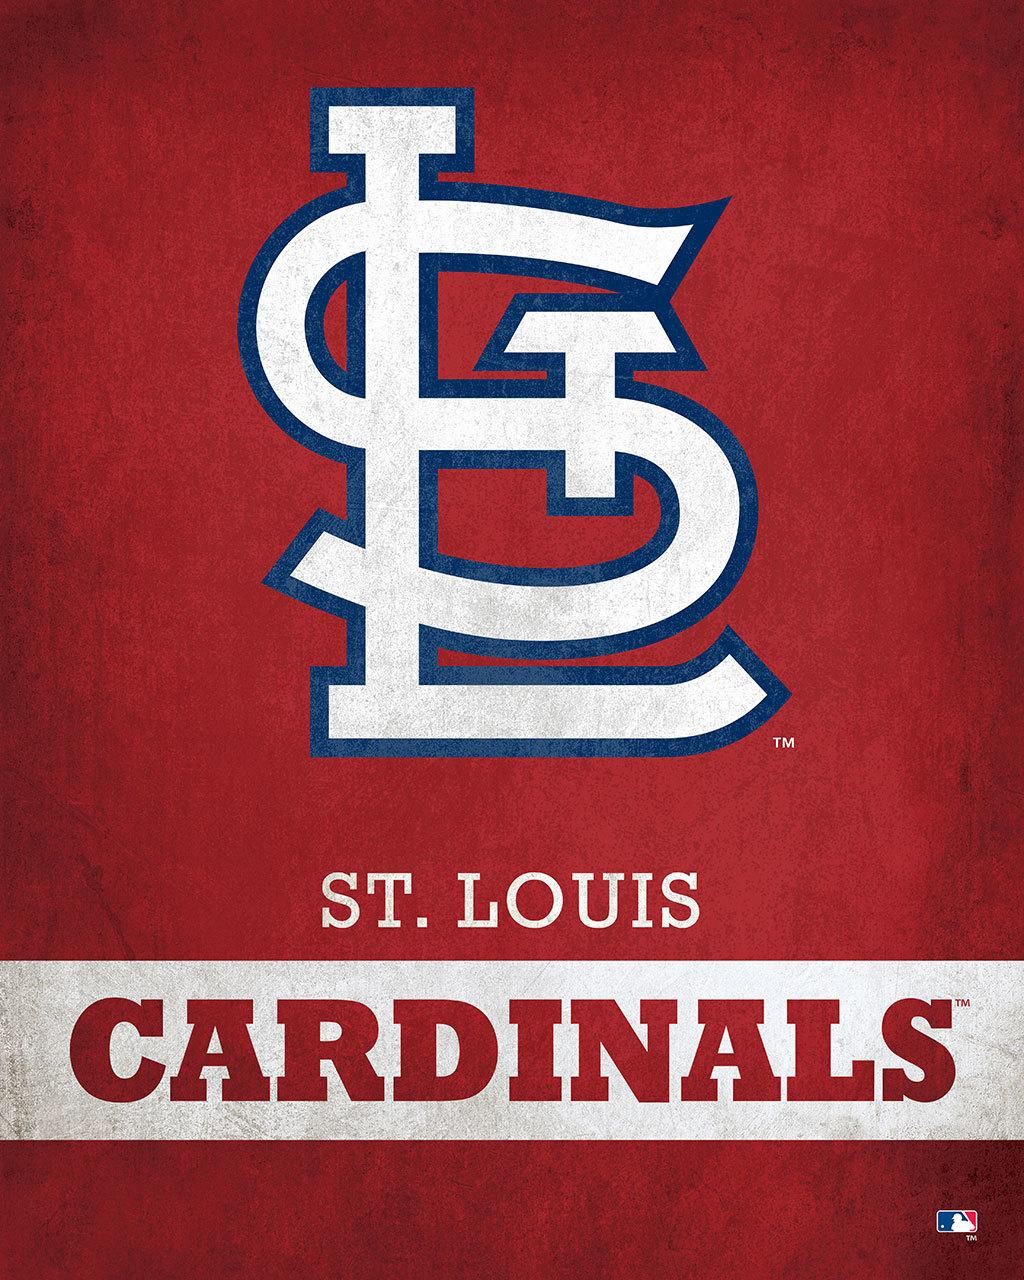 St. Louis Cardinals Logo - St. Louis Cardinals Logo - ScoreArt